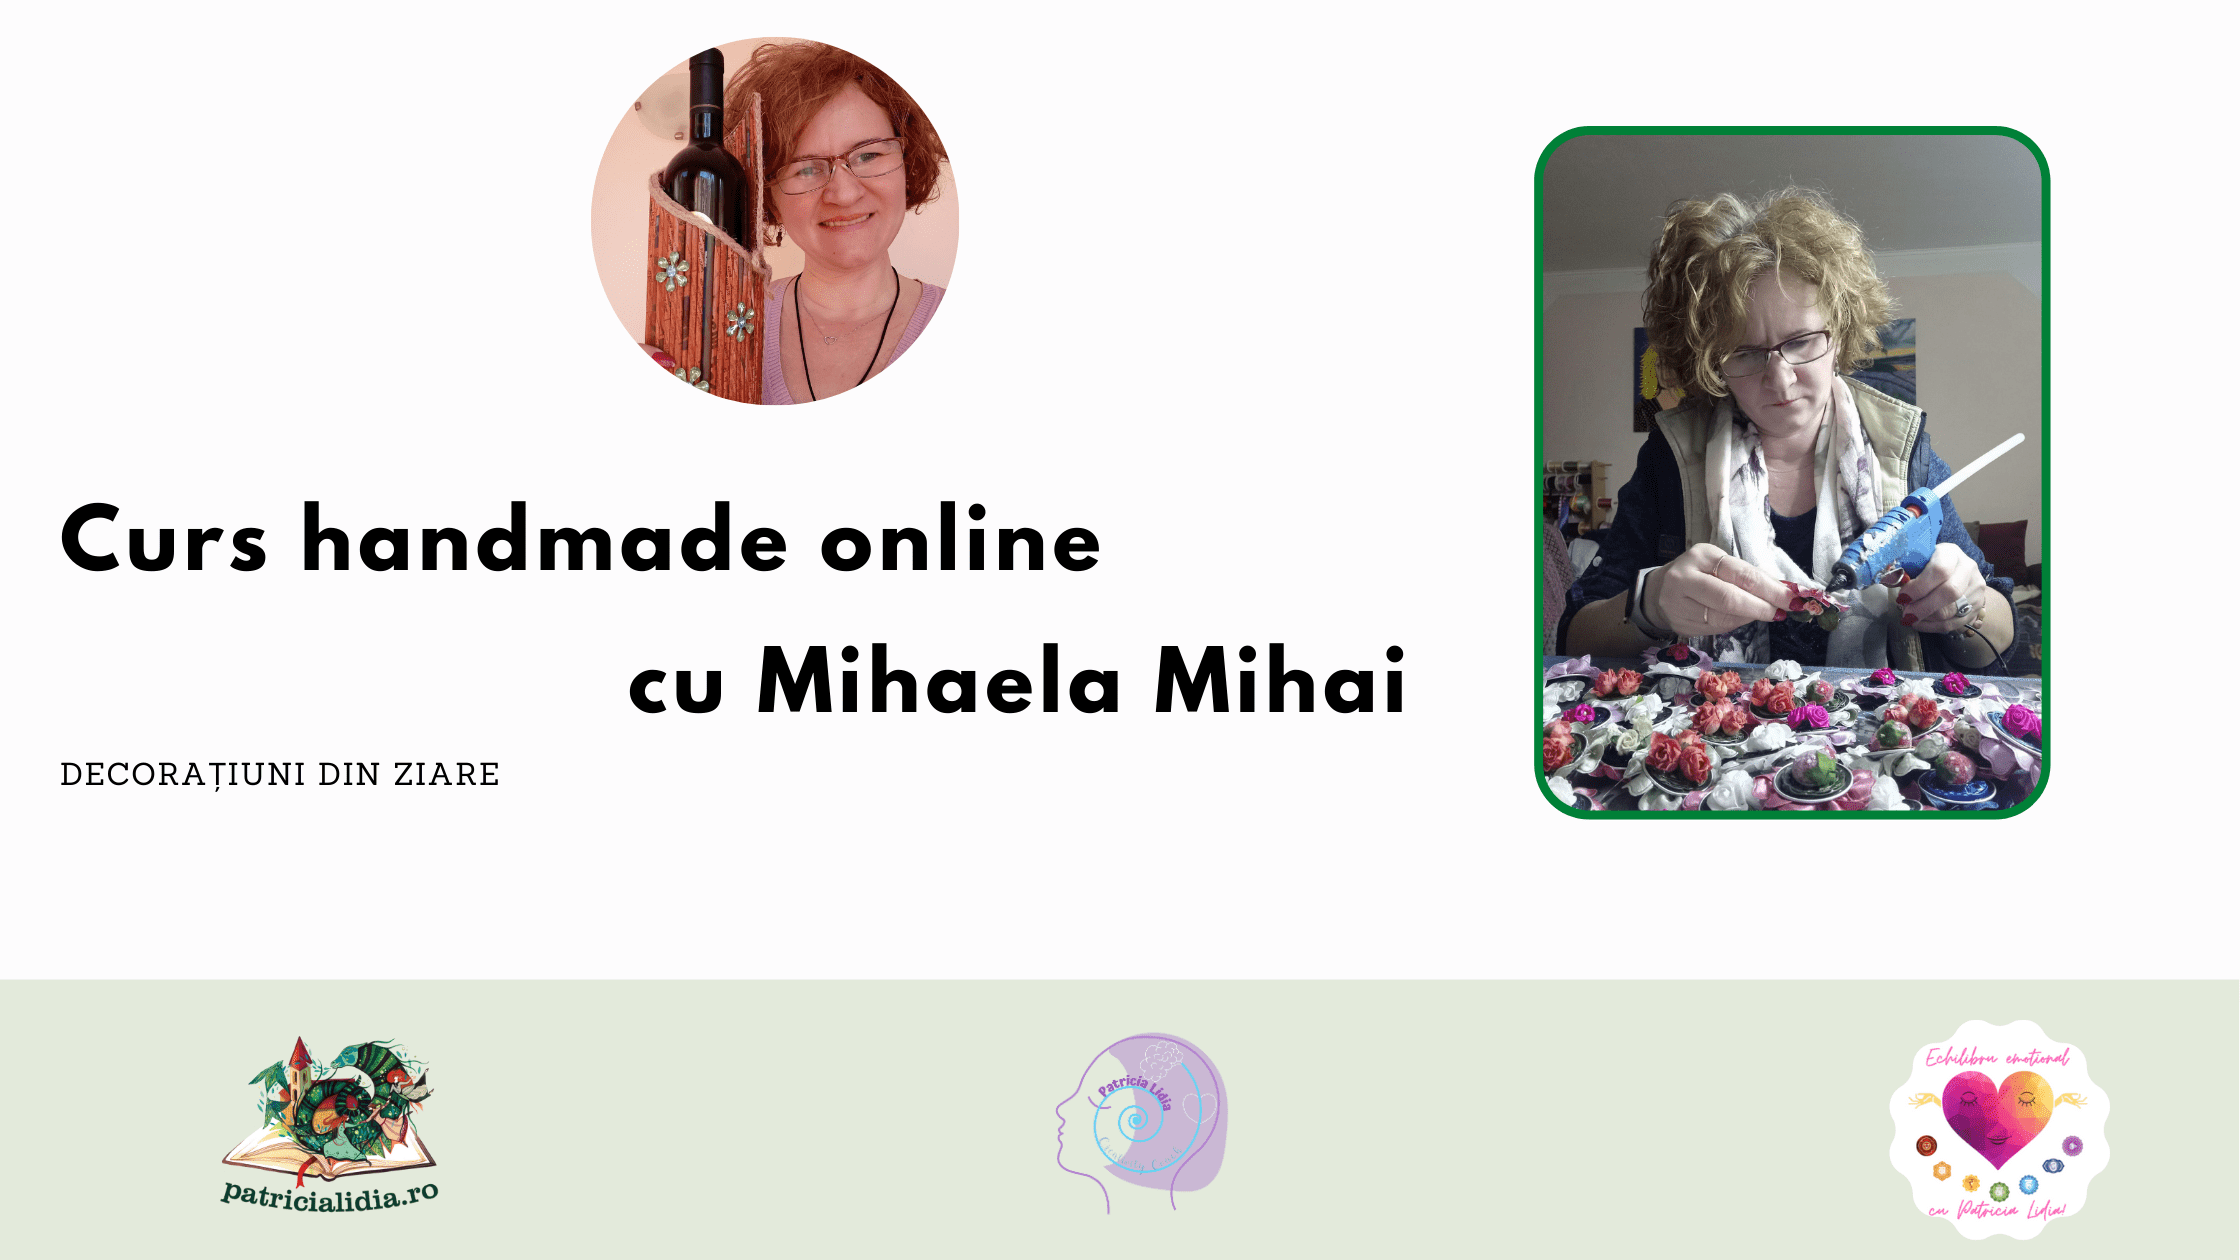 Mihaela Mihai